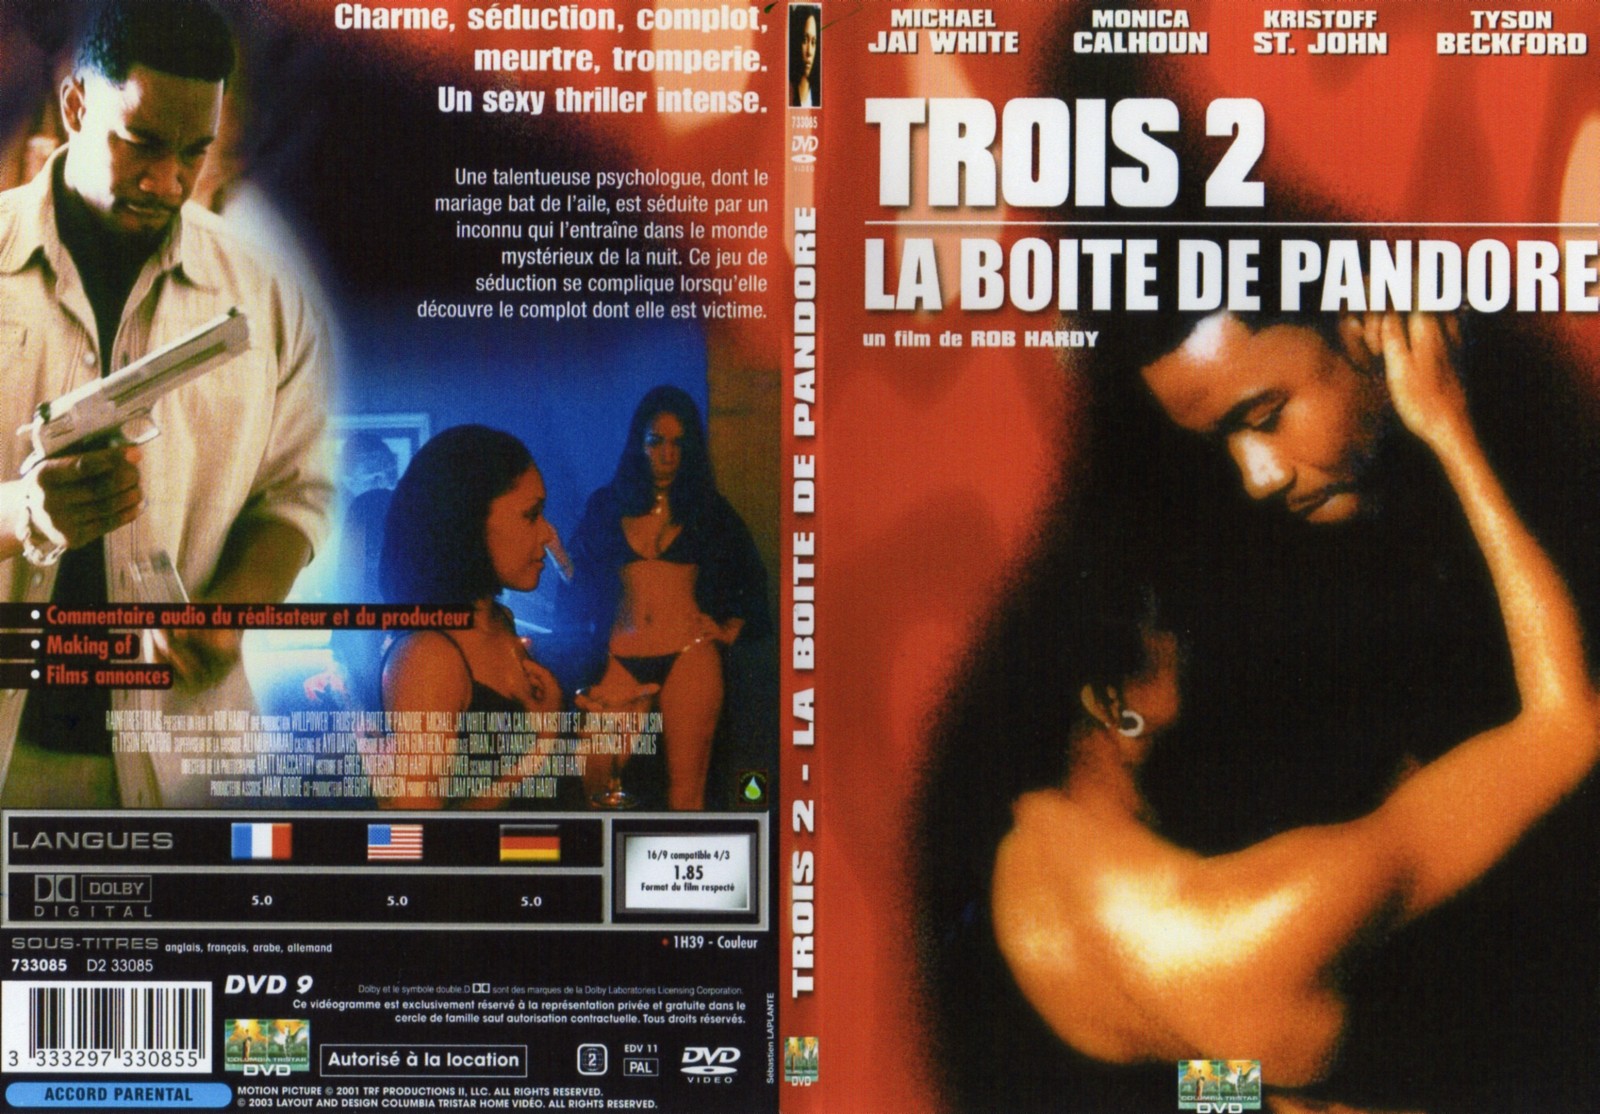 Jaquette DVD Trois 2 La boite de pandore - SLIM